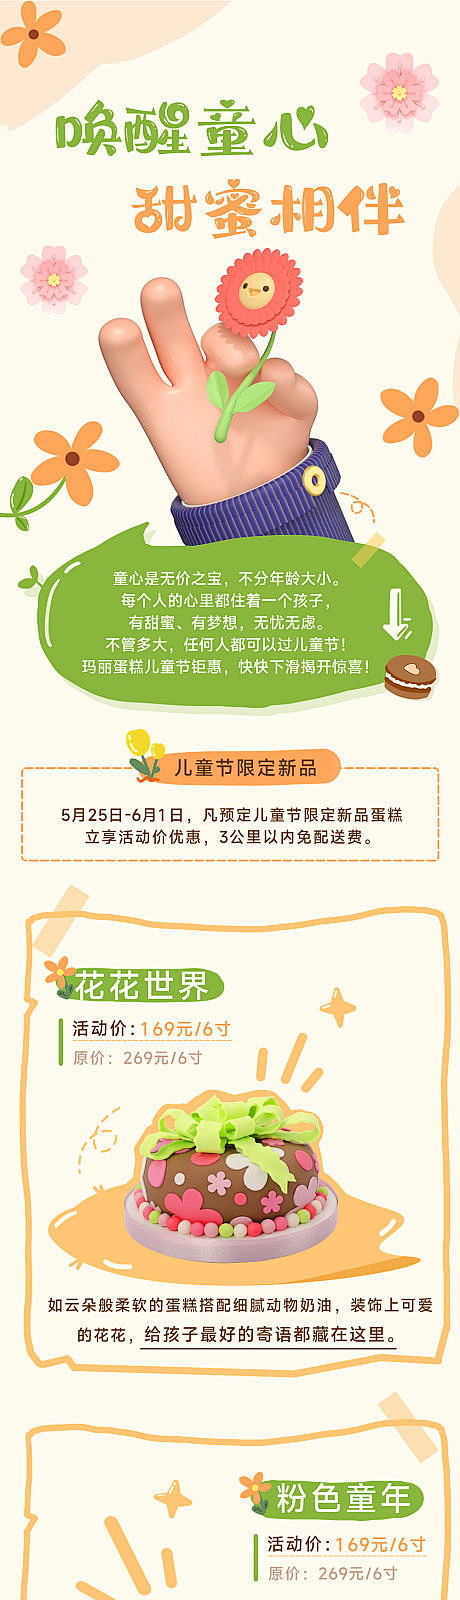 六一儿童节甜品蛋糕活动宣传长图海报-源文...